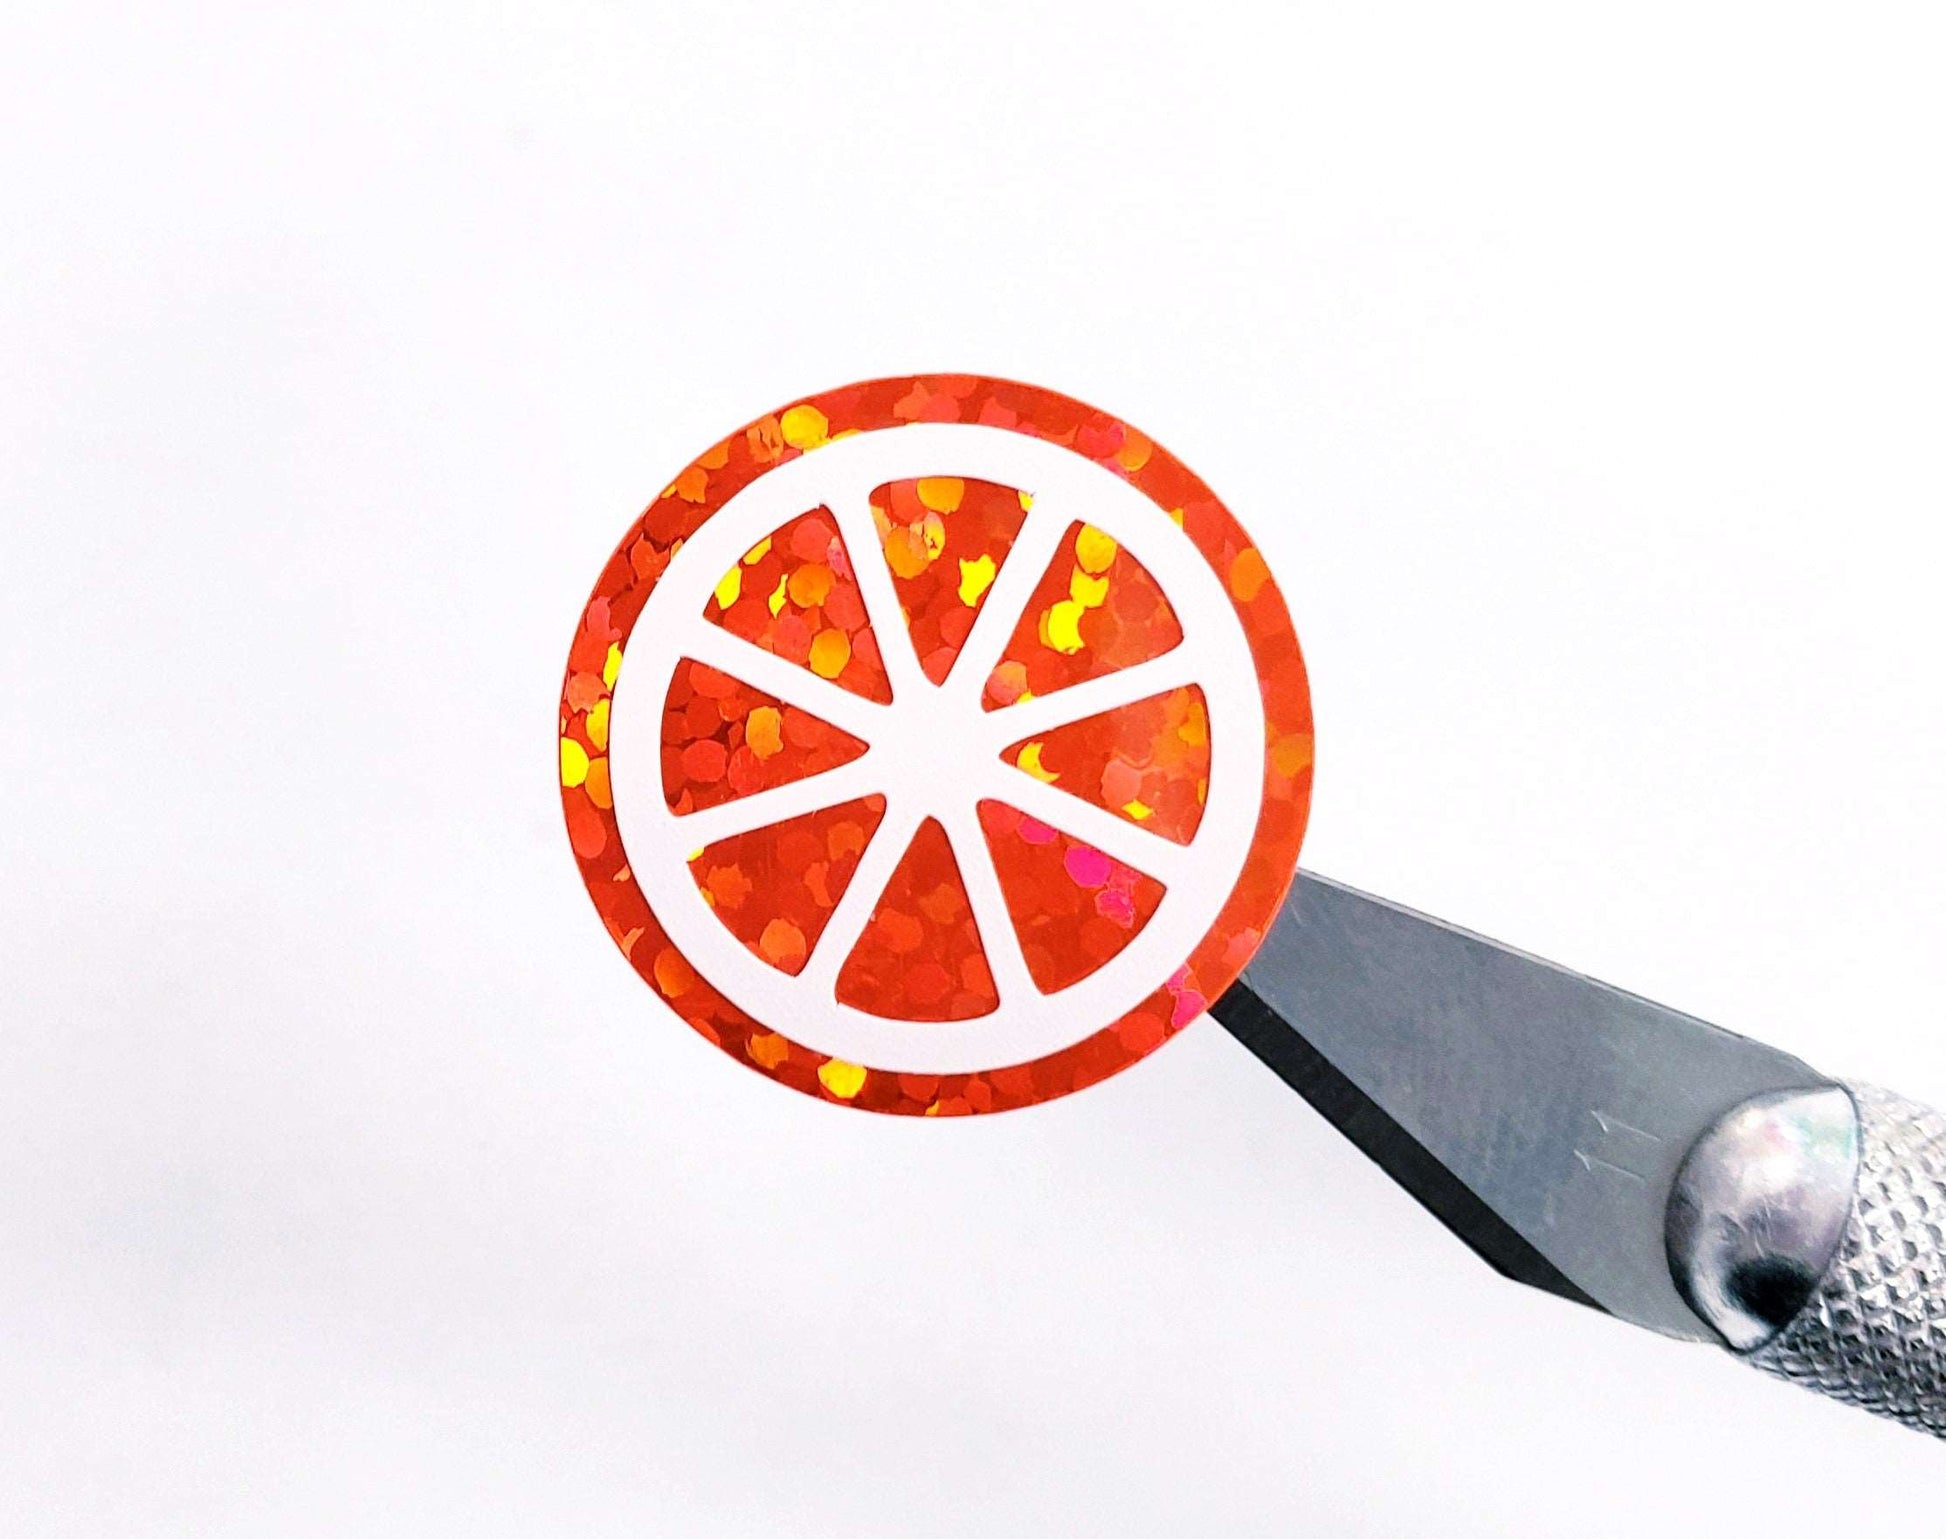 Orange Slice Stickers